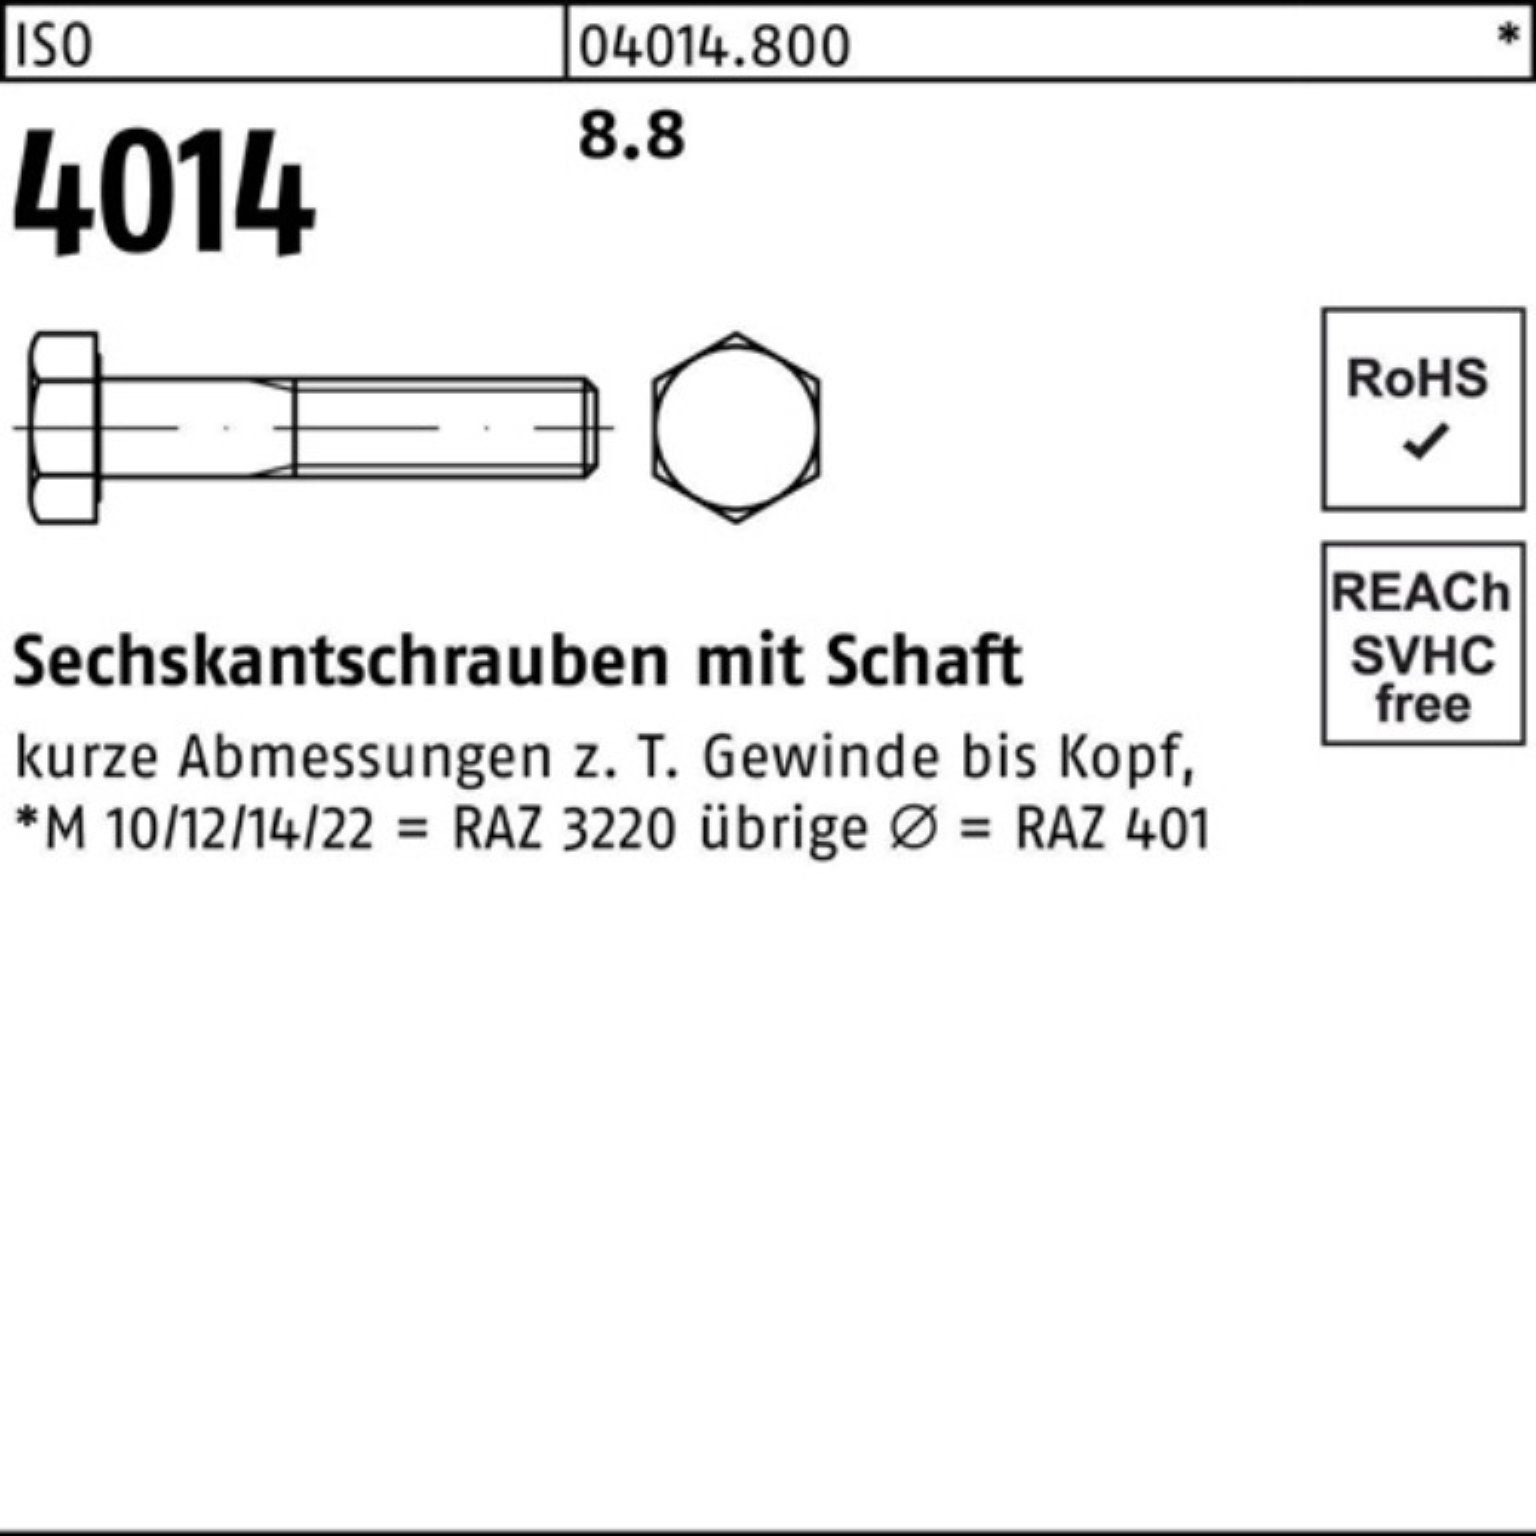 Sechskantschraube 1 M30x Pack Schaft 420 Stück Bufab Sechskantschraube 8.8 4014 ISO 100er ISO